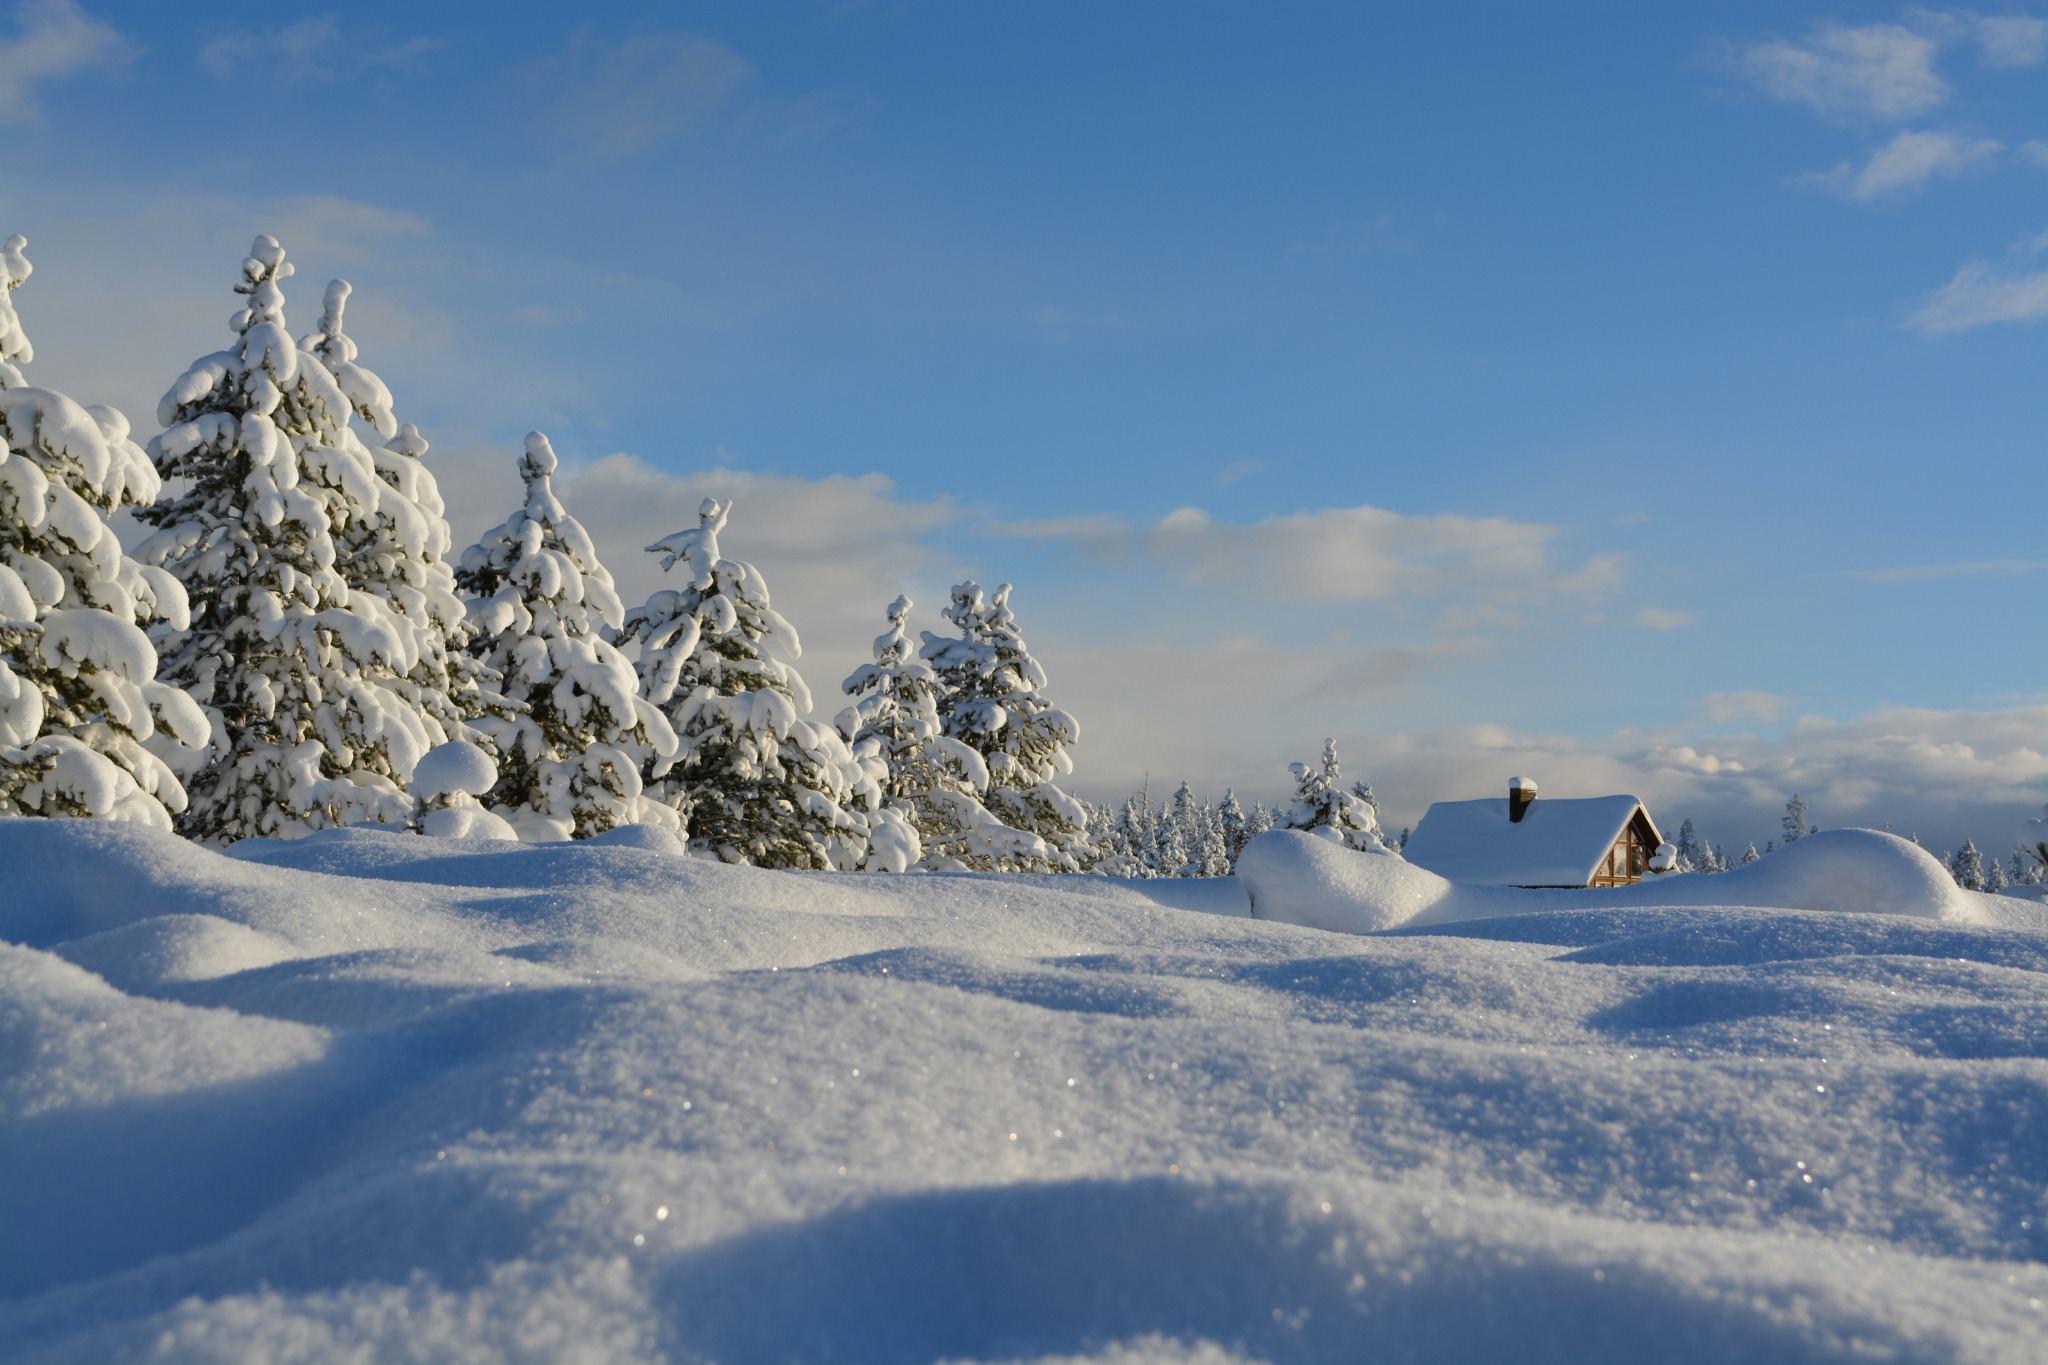 Snowy cabin winter landscape